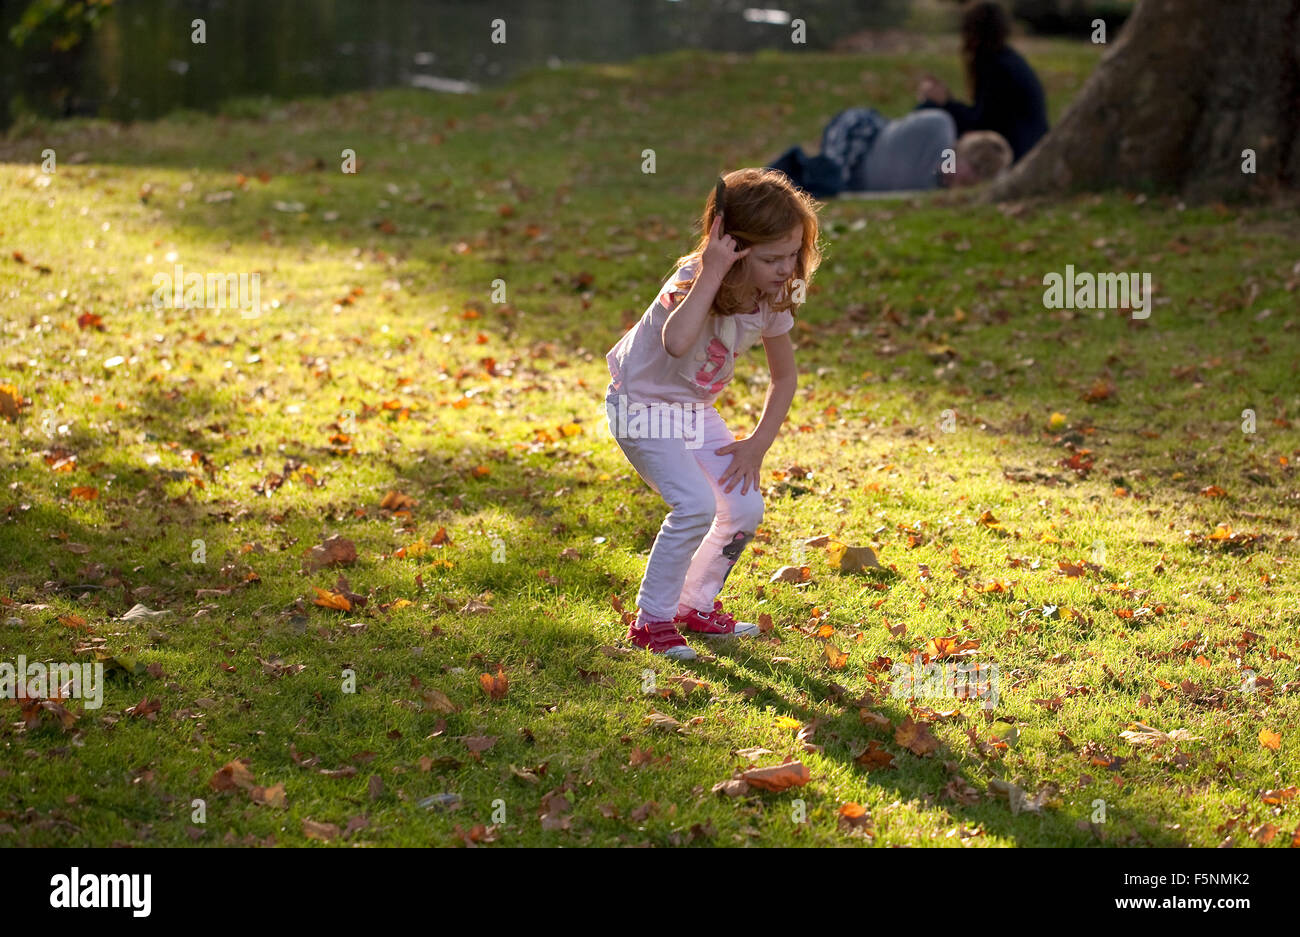 Una giovane ragazza cerca attraverso le foglie cercando conkers caduti. Essa si erge in un flusso di luce del sole che trattiene i suoi capelli. Foto Stock